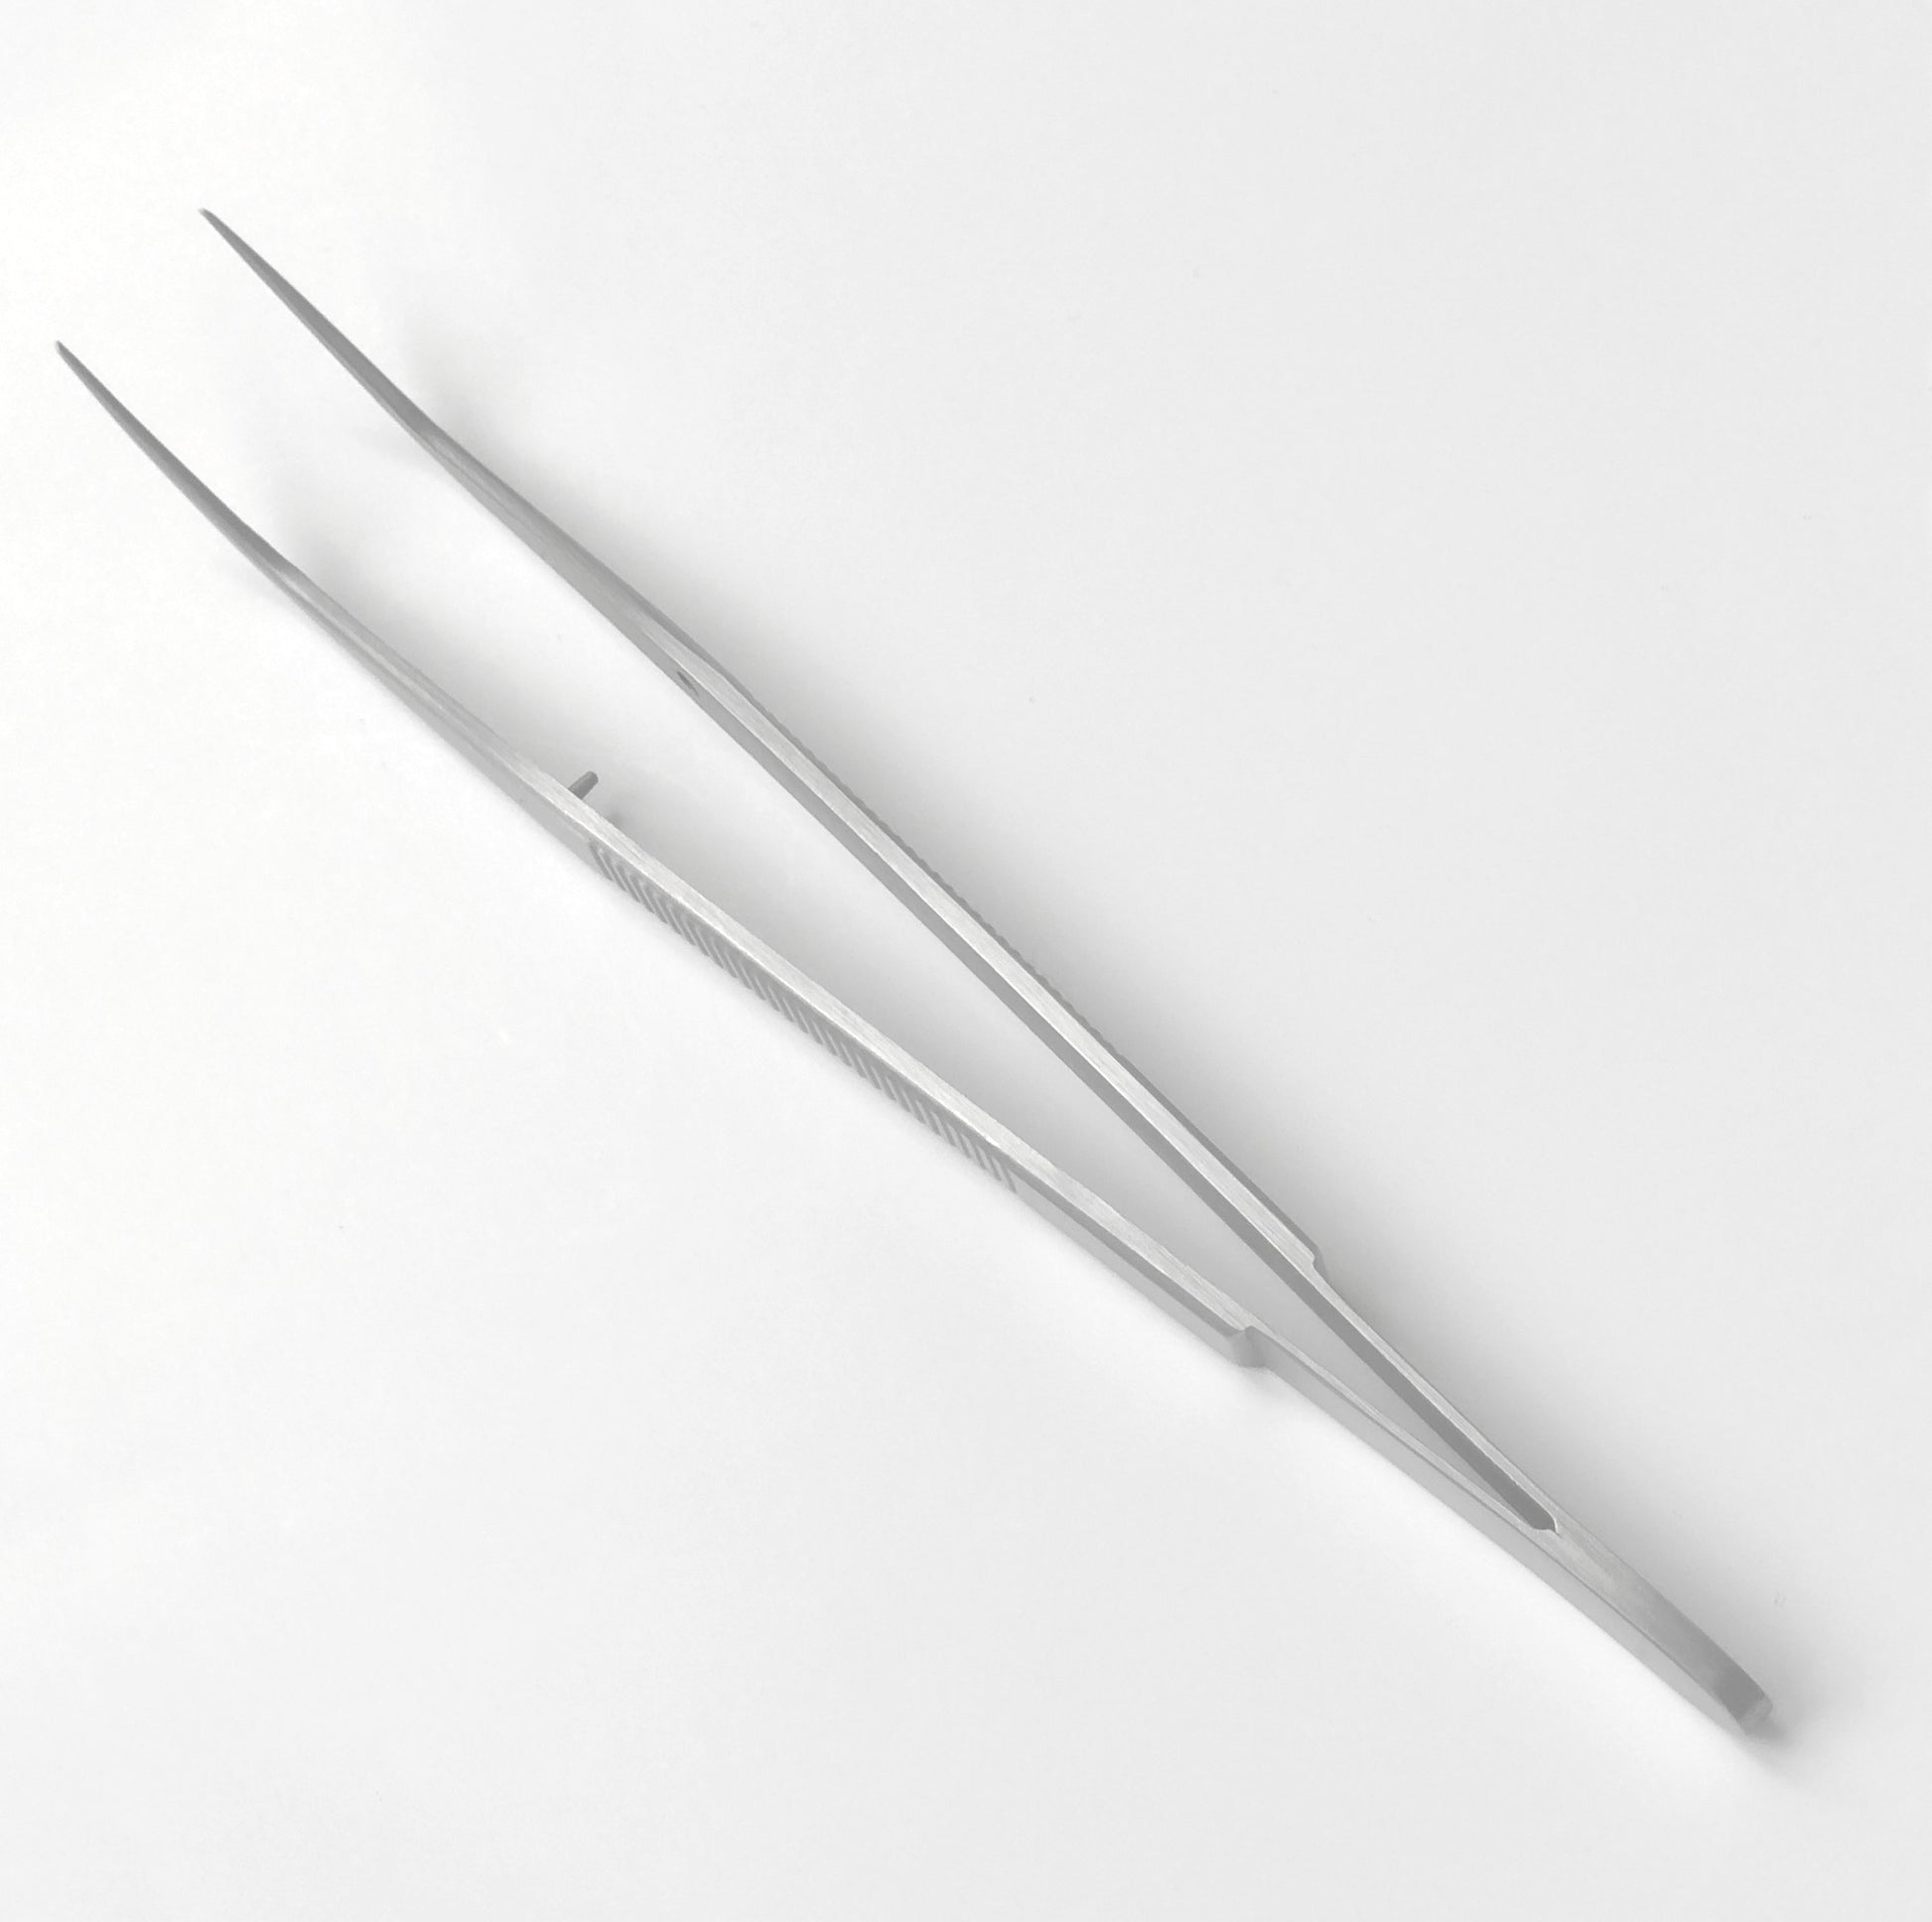 Sewing Tweezers ∣ 15 cm metal tweezers for sewing – toolly